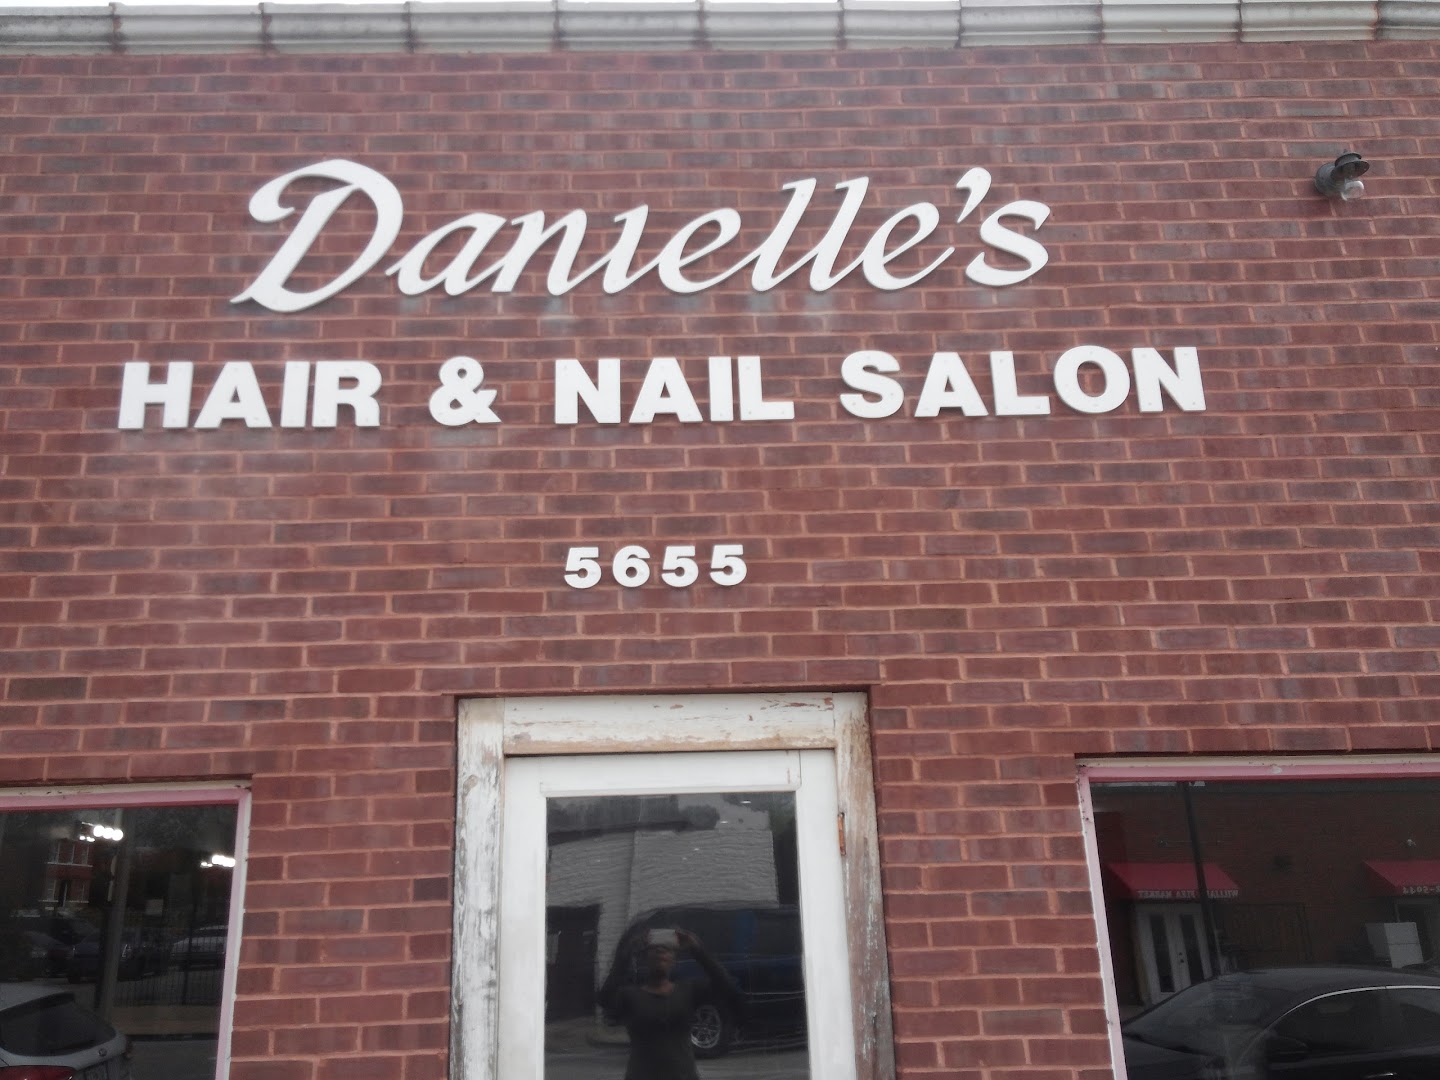 Danielle's Hair & Nail Salon